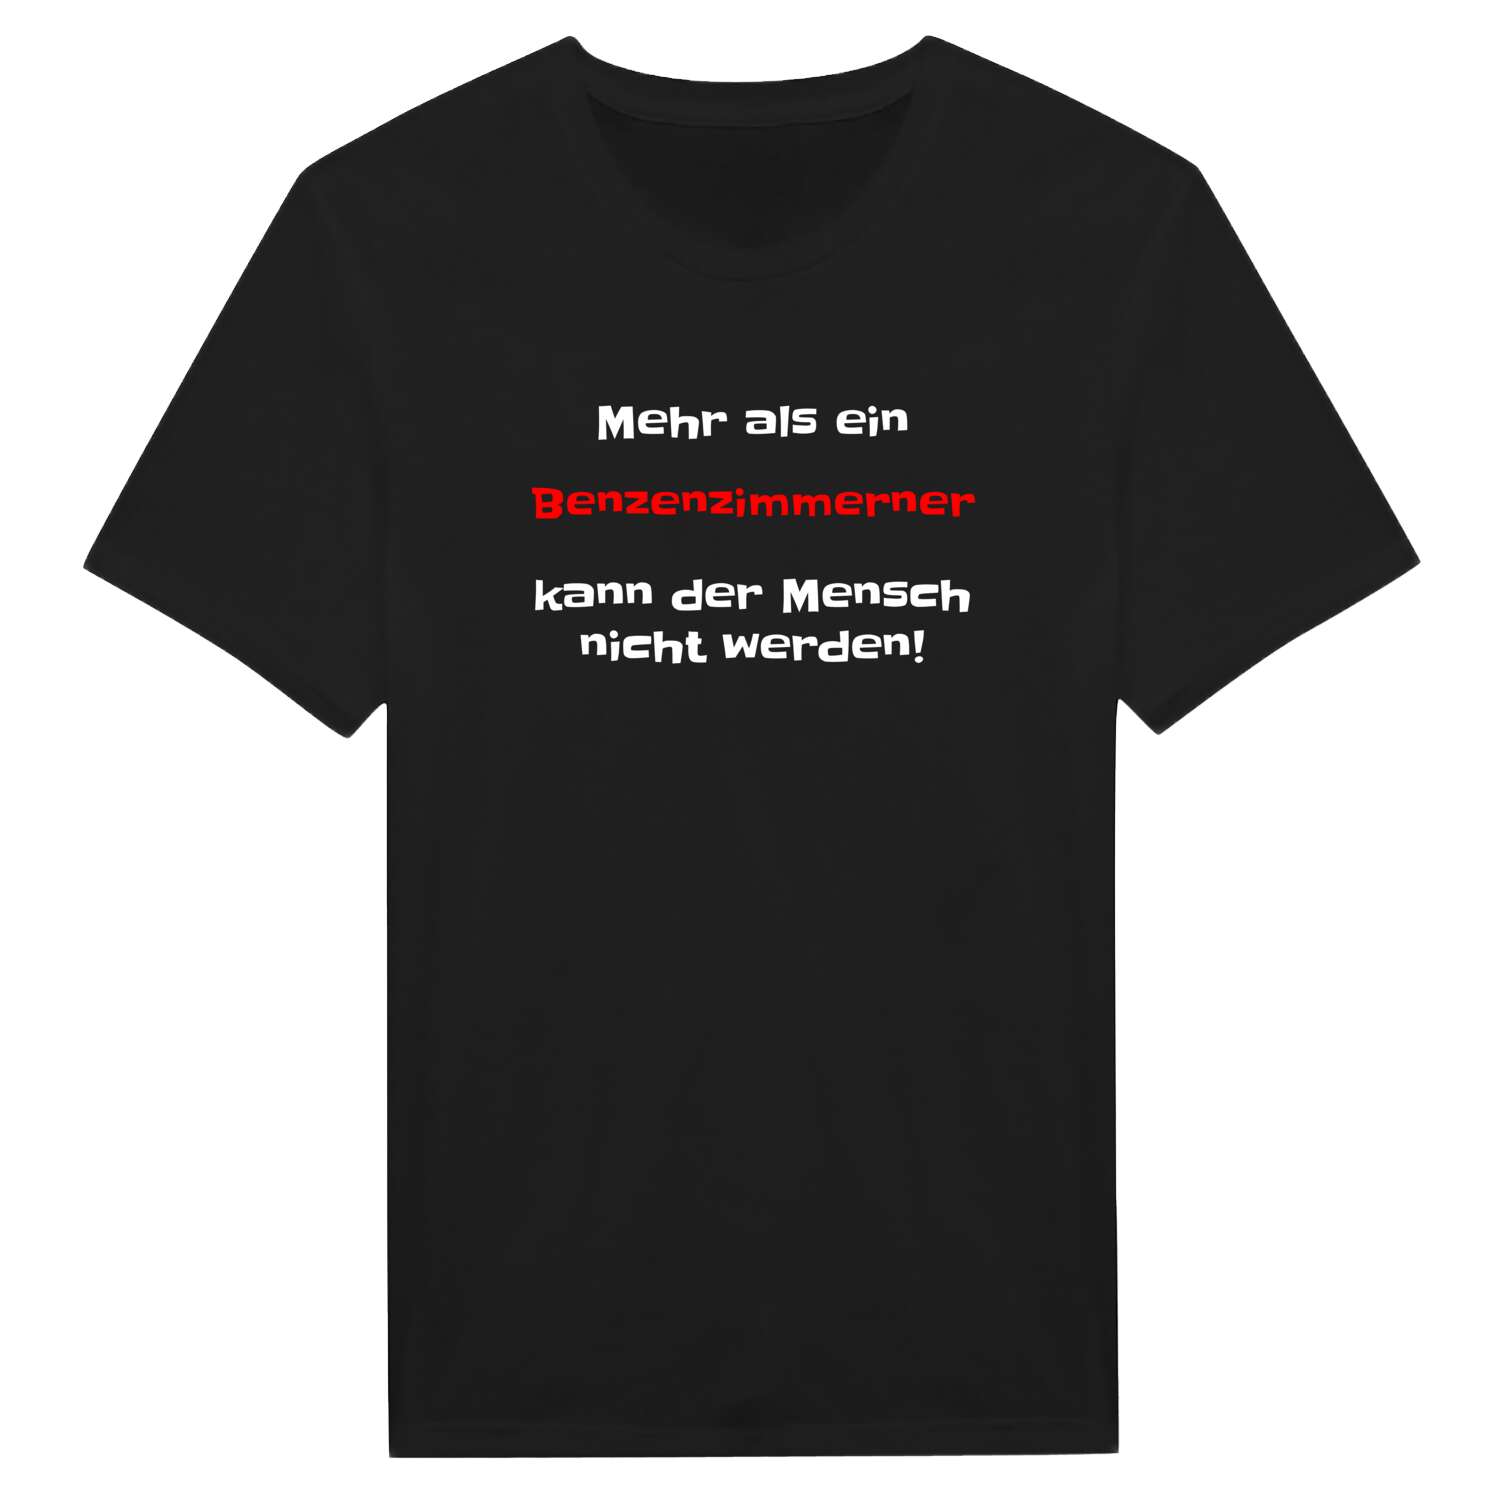 Benzenzimmern T-Shirt »Mehr als ein«